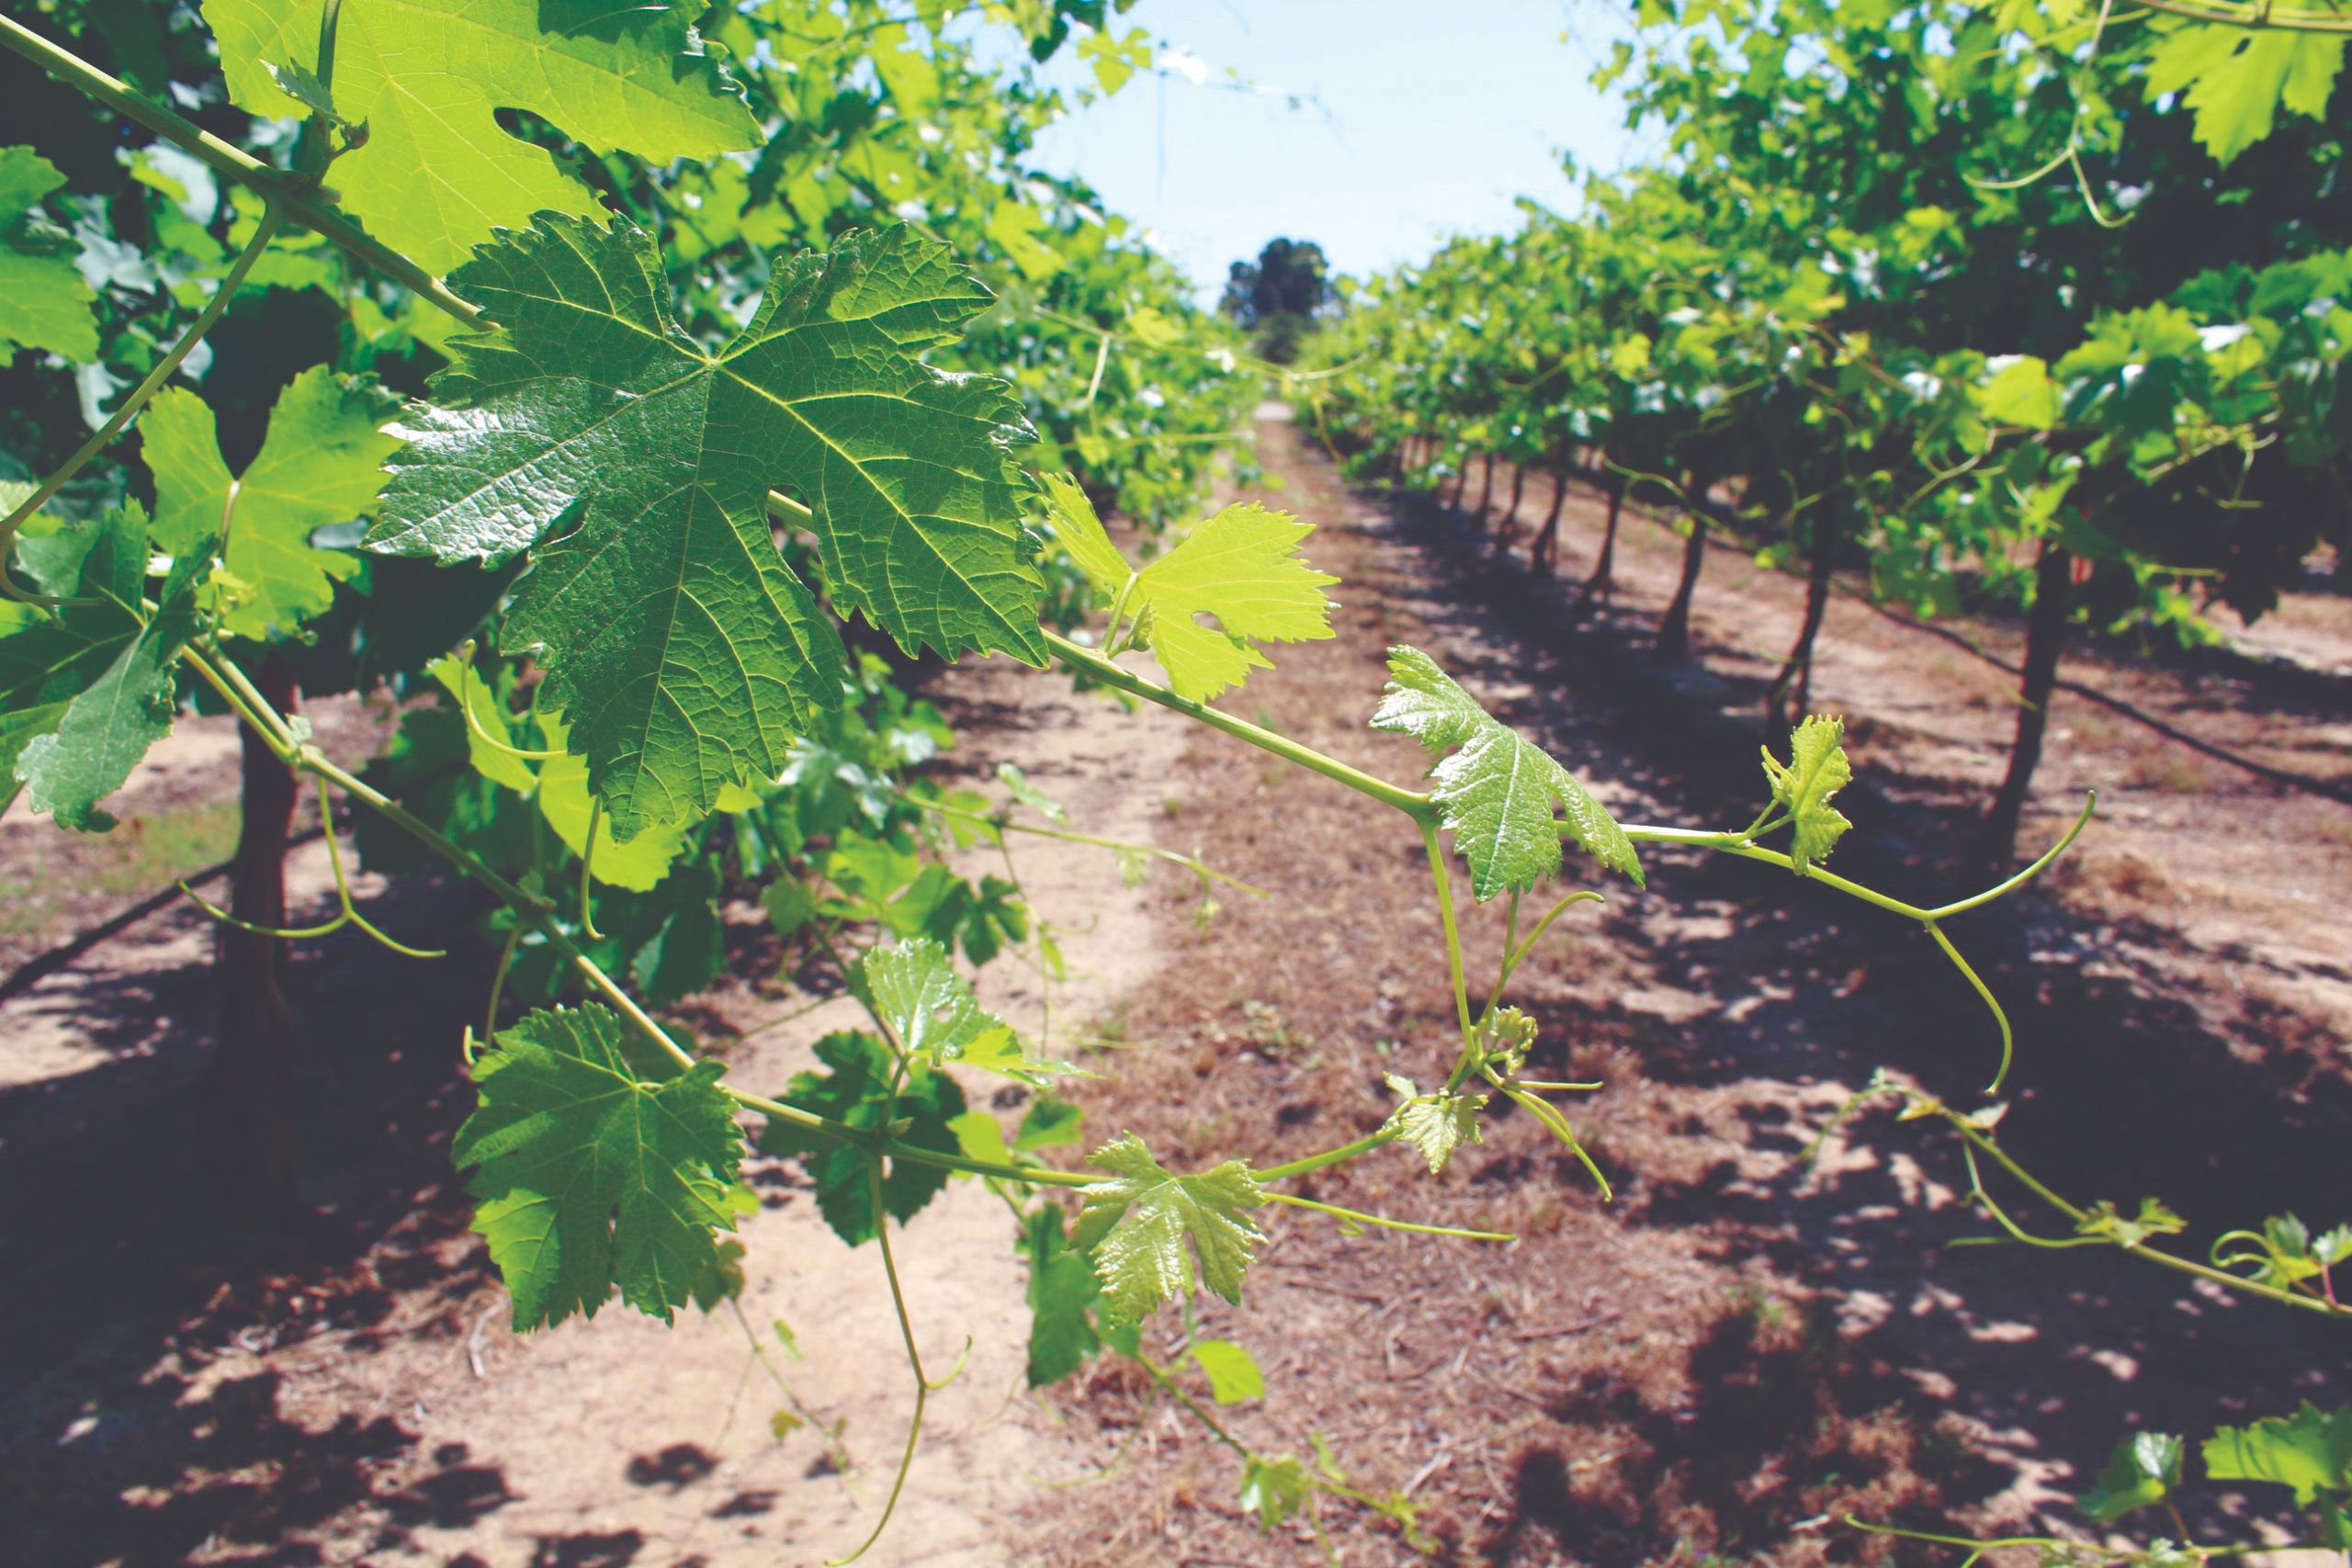 biološka sredstva za zaštitu vinove loze biološka zaštita vinograda